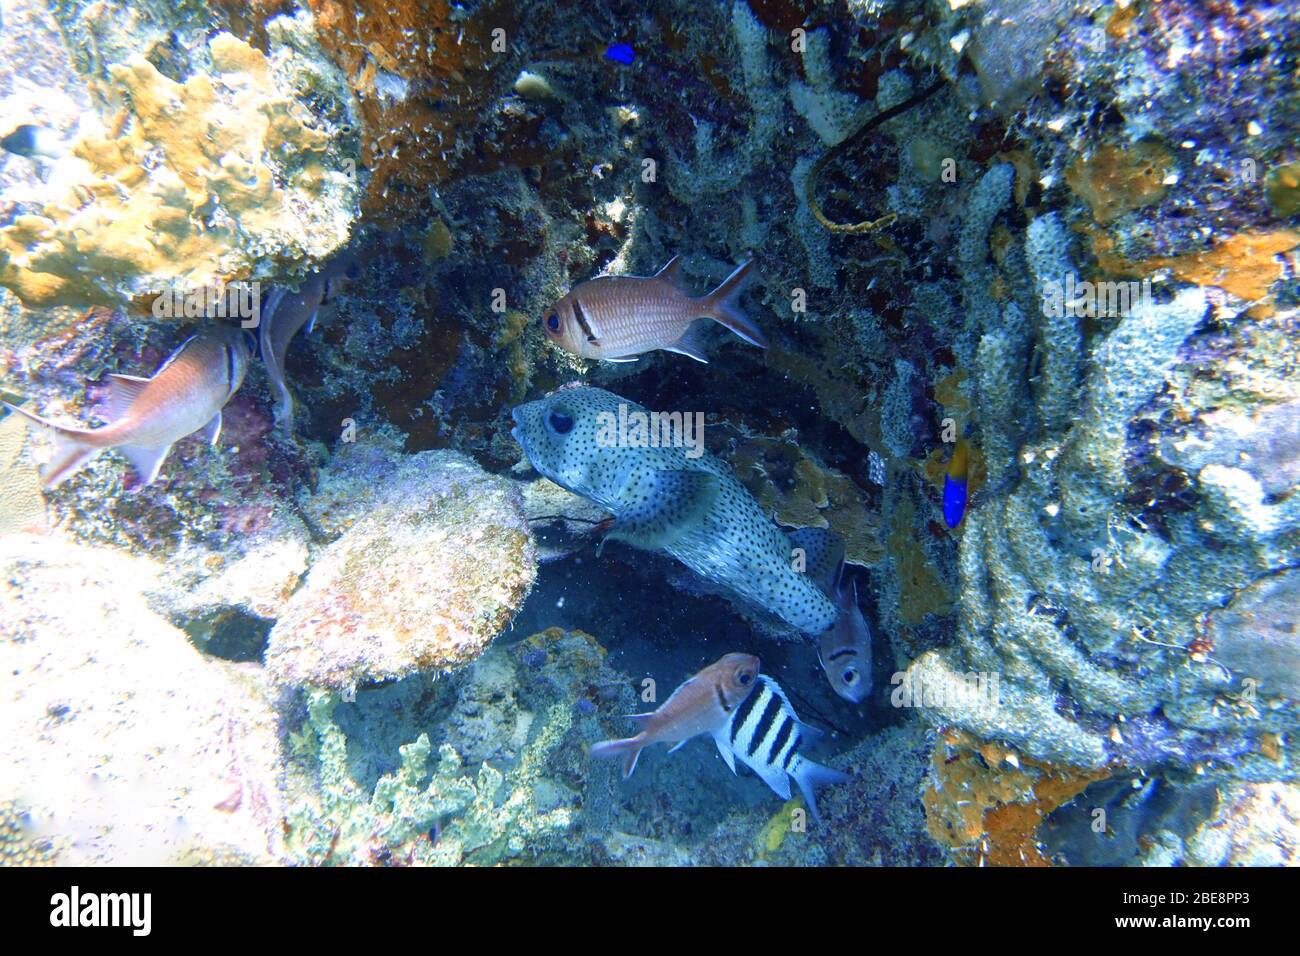 Des pufferfish (Tetraodontidae) se cachant des prédateurs entre les coraux, le long d'un grand écureuil (Holocertridae). Banque D'Images